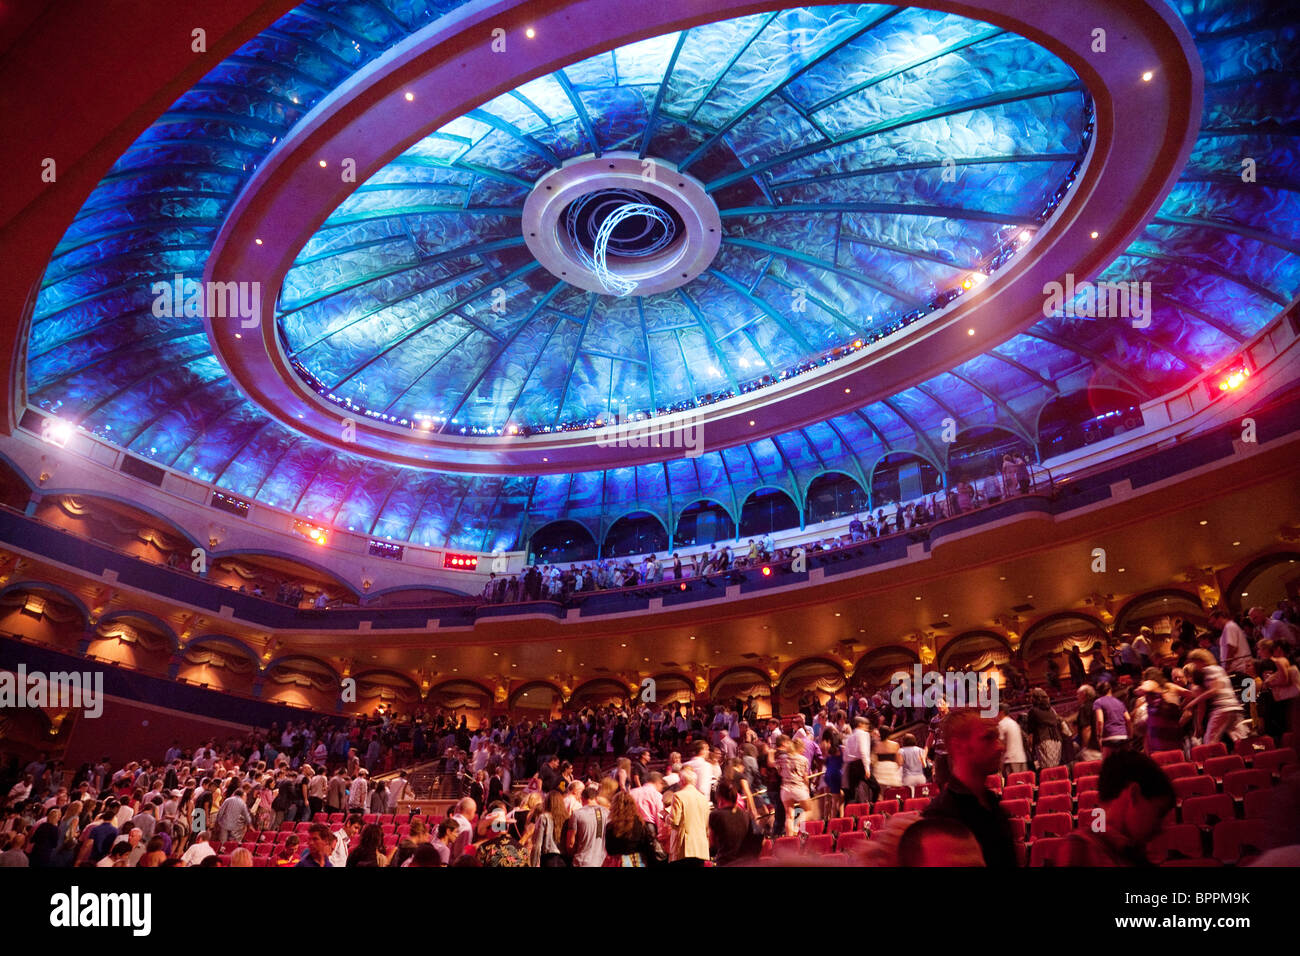 El teatro en el Bellagio Hotel de Las Vegas donde el espectáculo del Cirque du Soleil 'O' se realiza Foto de stock